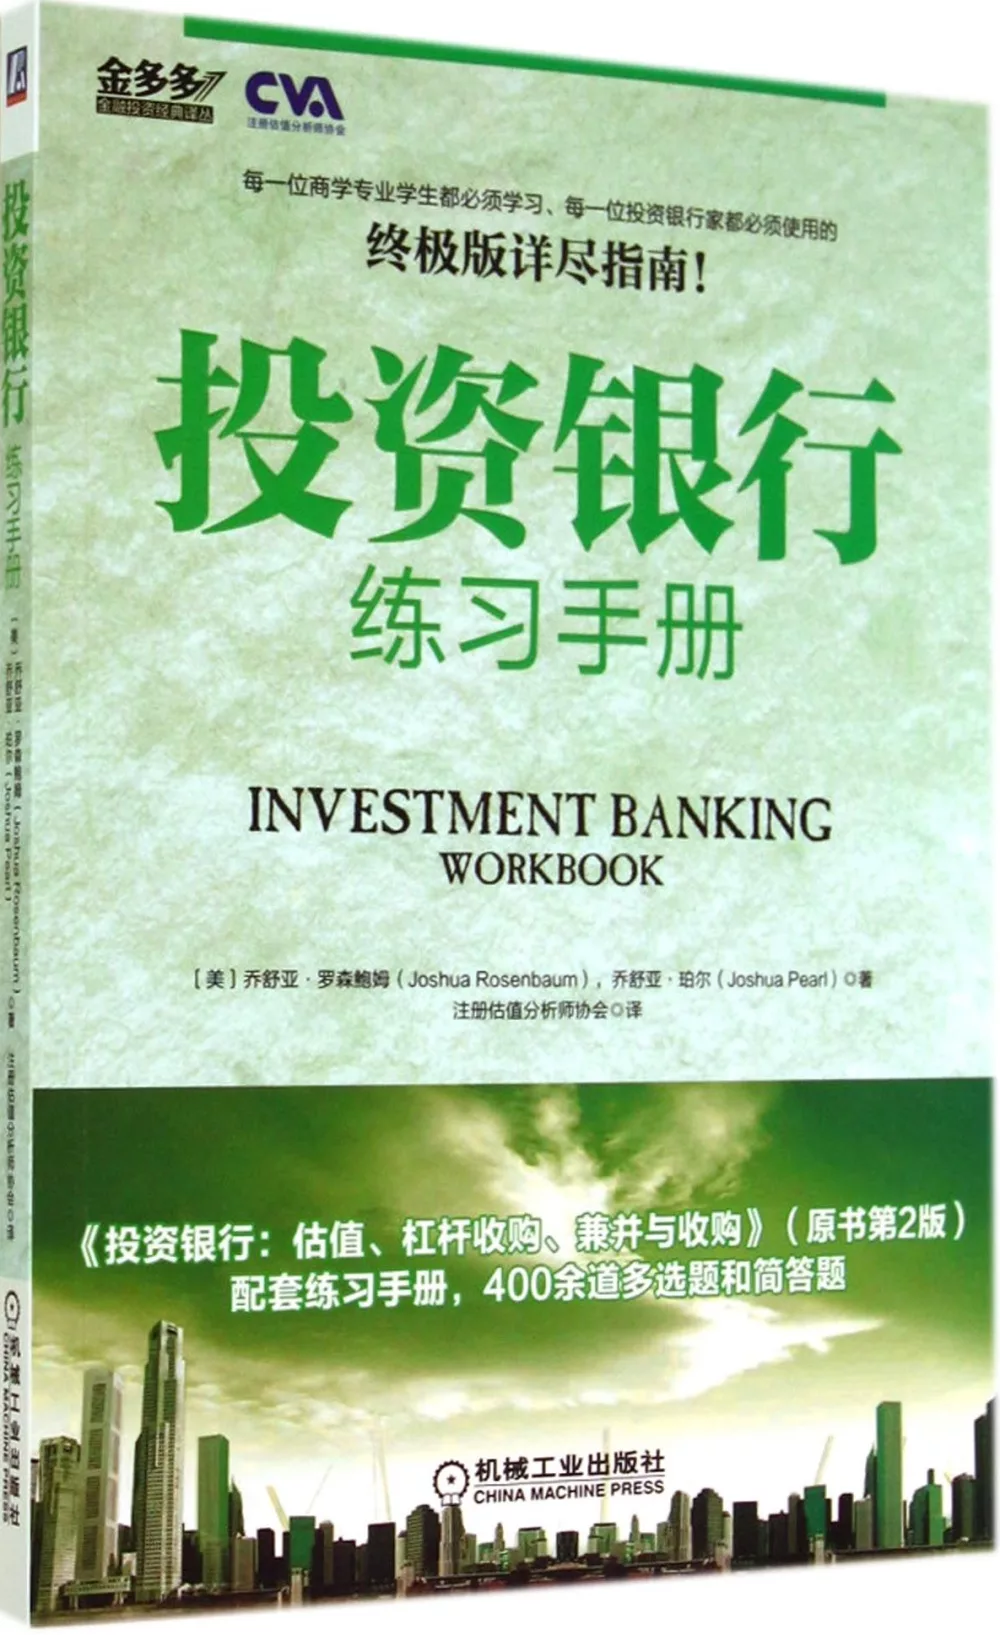 投資銀行練習手冊